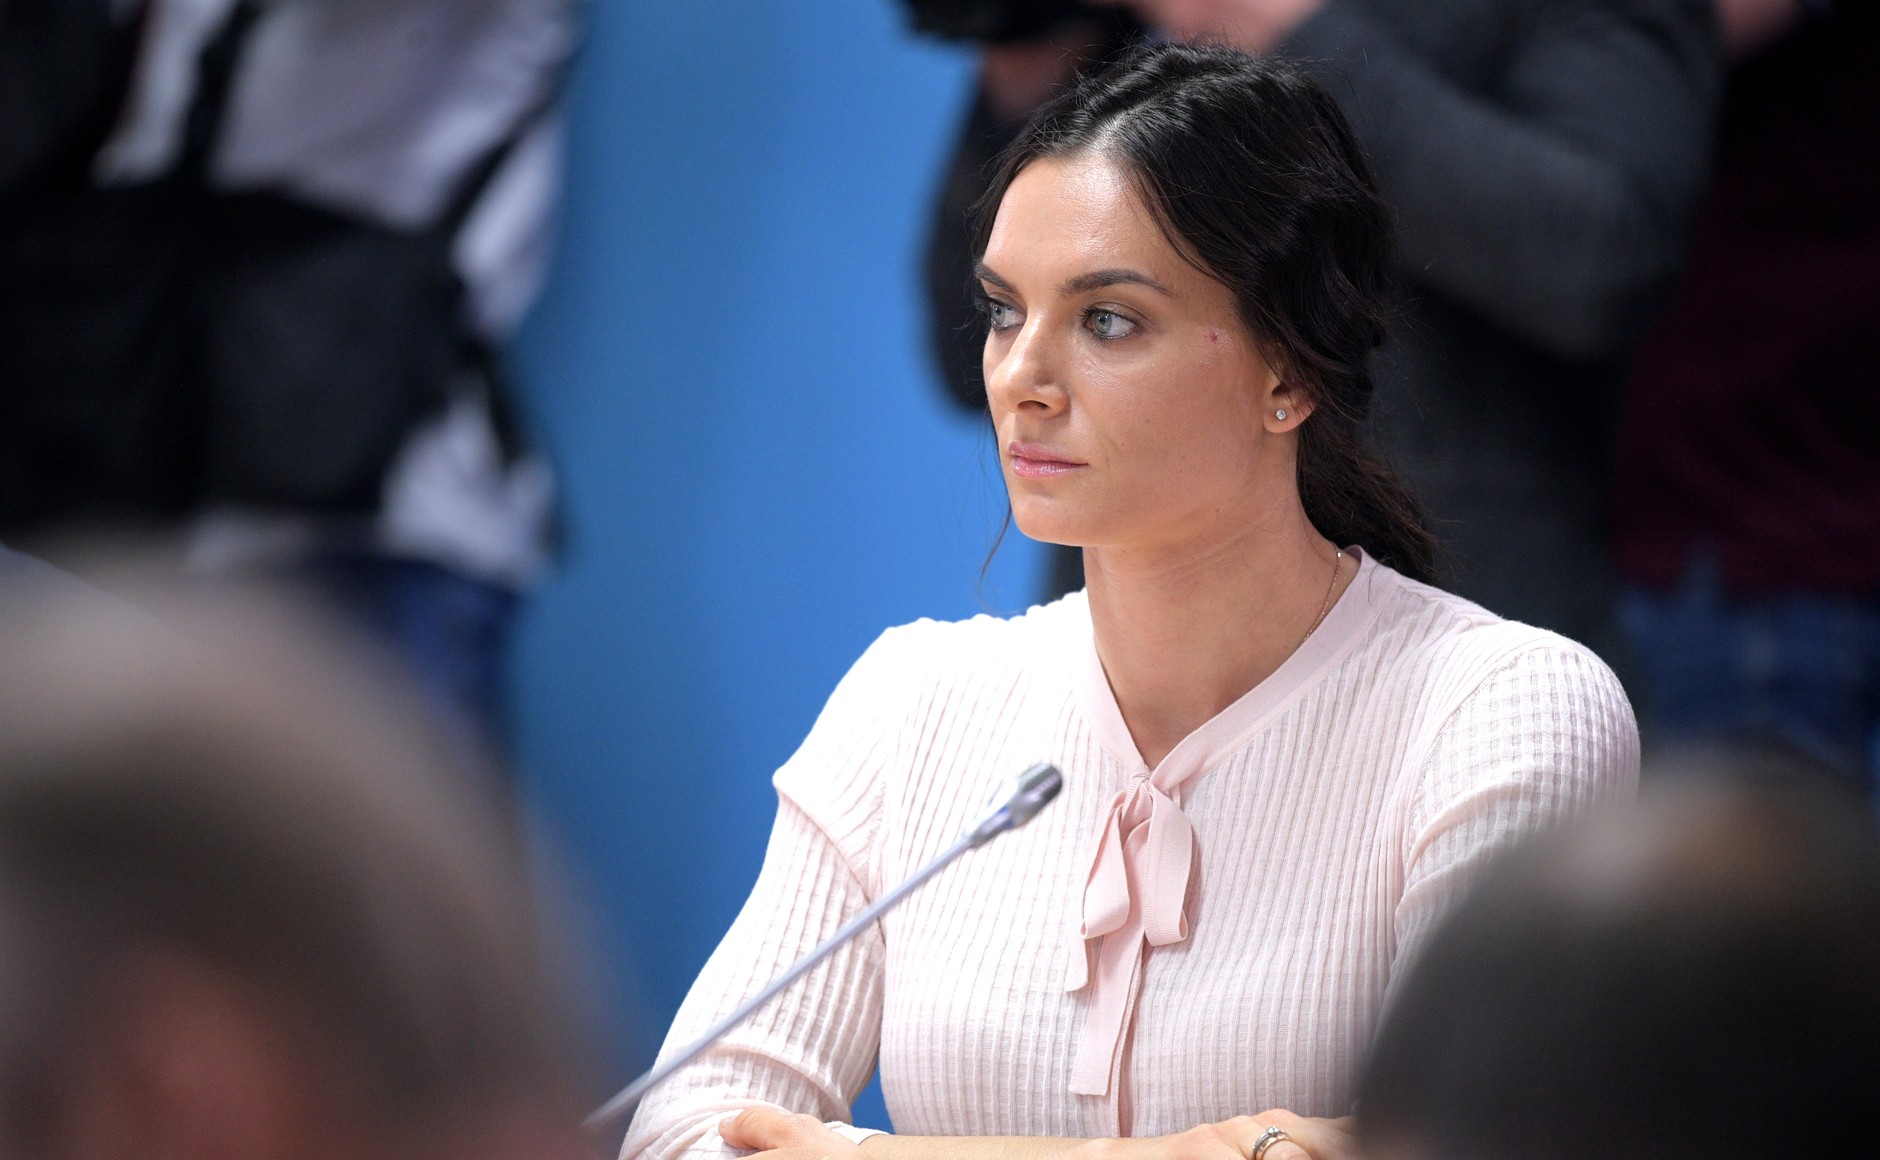 ФНС выставила многотысячный штраф олимпийской чемпионке Исинбаевой и грозит заблокировать счета